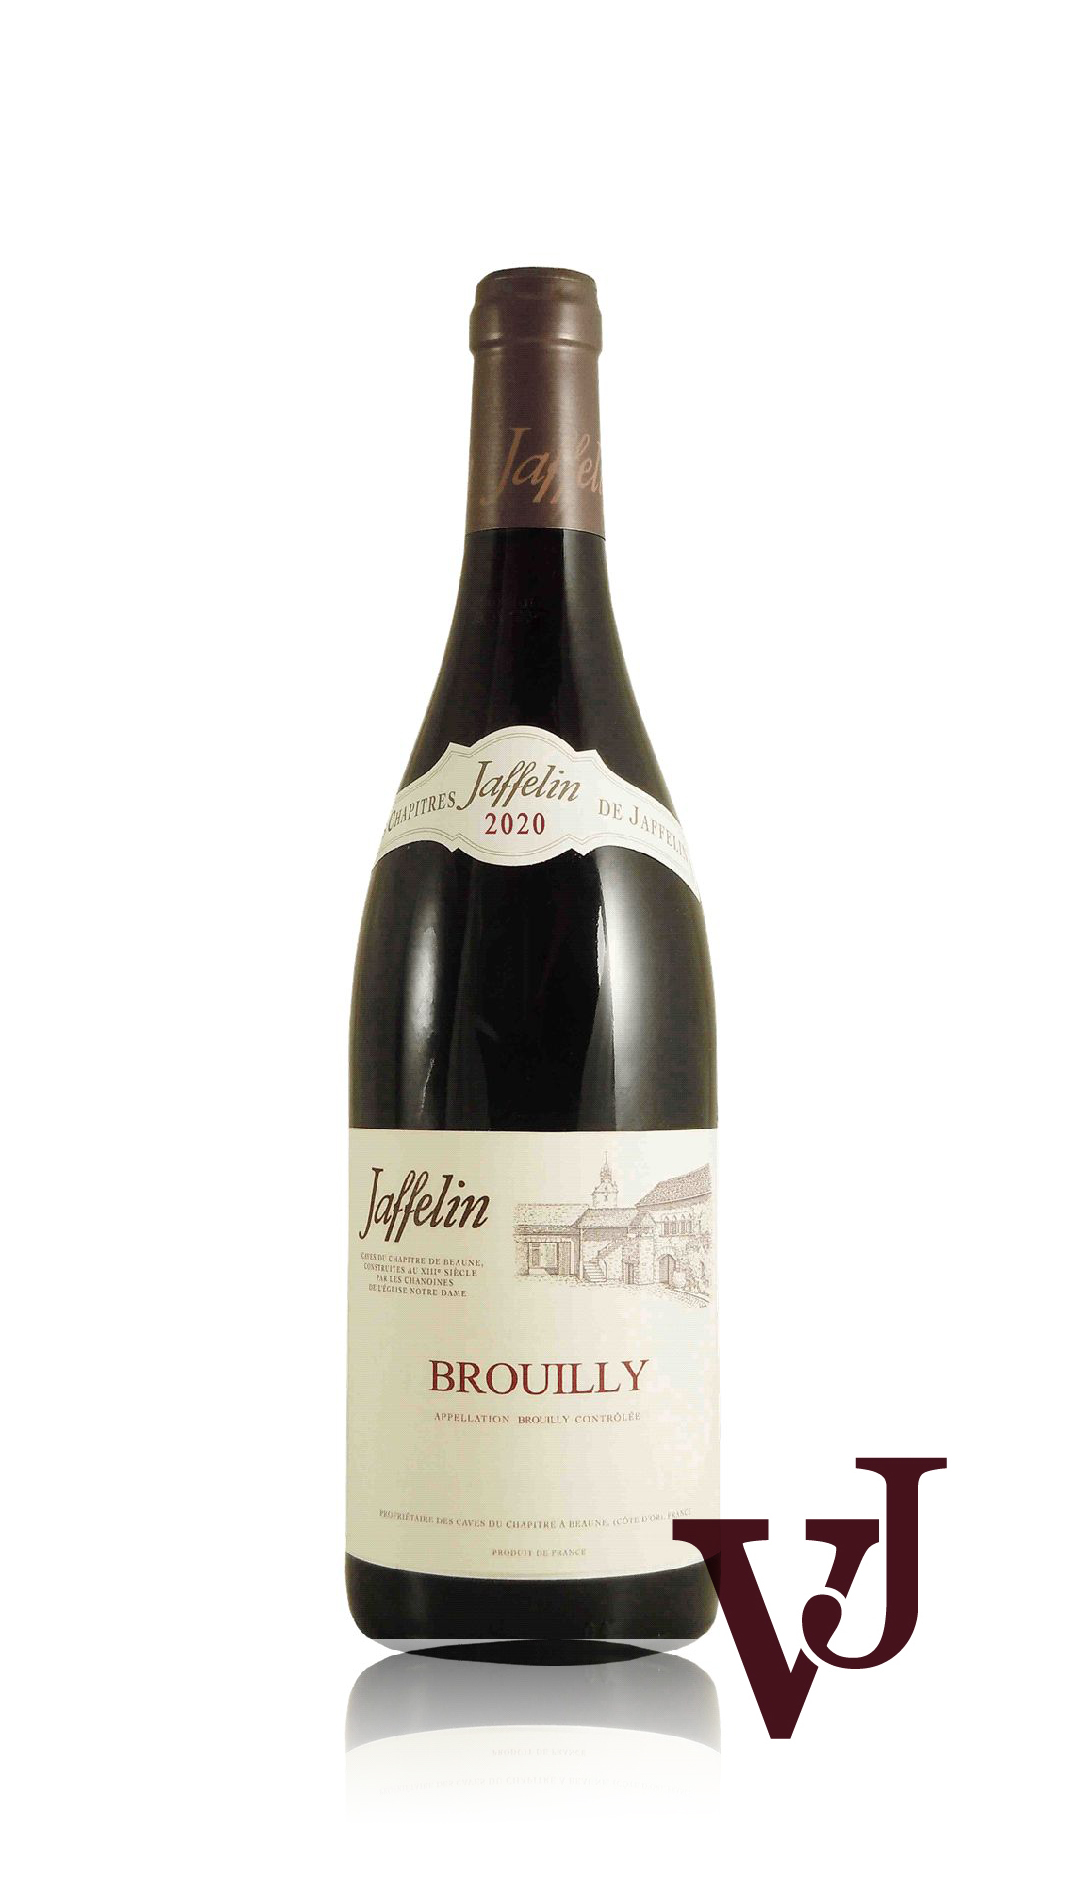 Rött Vin - Jaffelin Brouilly artikel nummer 5384201 från producenten Jaffelin från området Frankrike - Vinjournalen.se